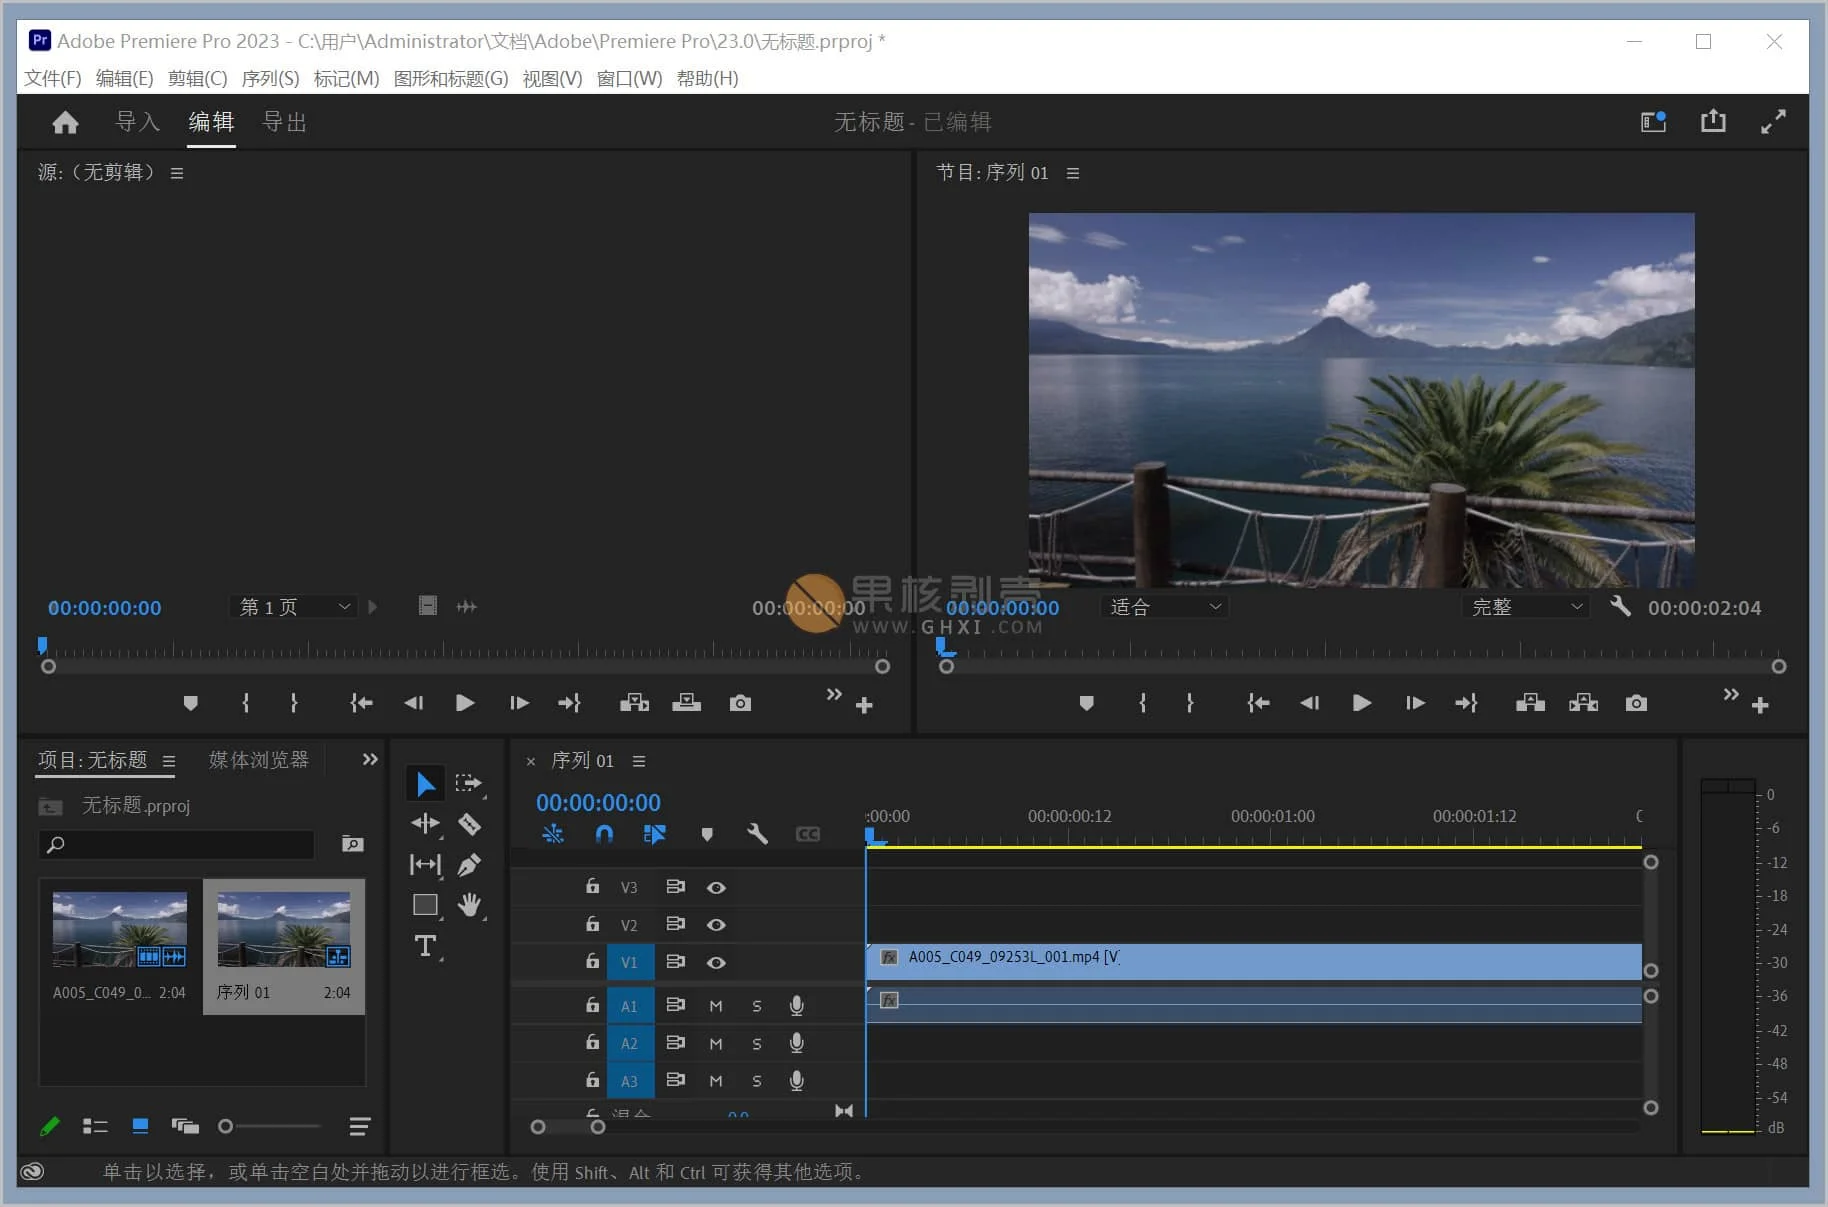 Adobe Premiere Pro 2023 (23.1.0) 便携版